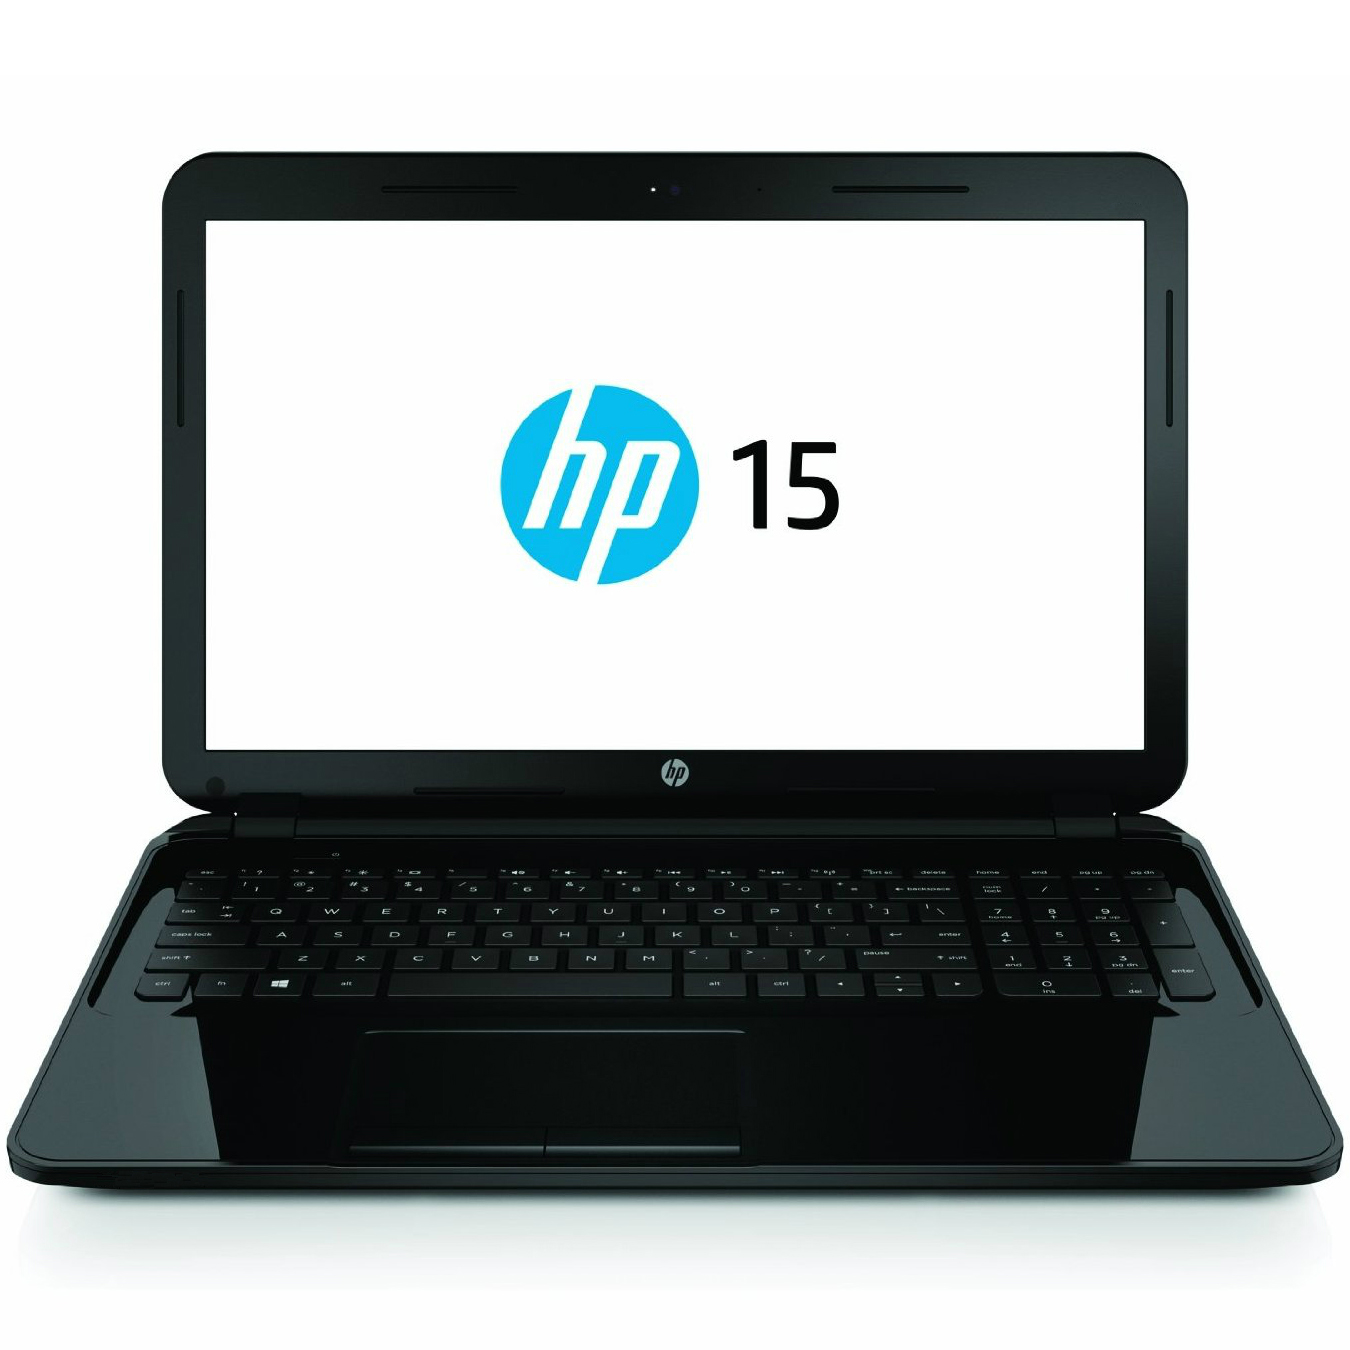  Laptop HP 15-R153NQ, Intel Pentium N3540, 8GB DDR3, HDD 1TB, Intel HD Graphics, Windows 8 